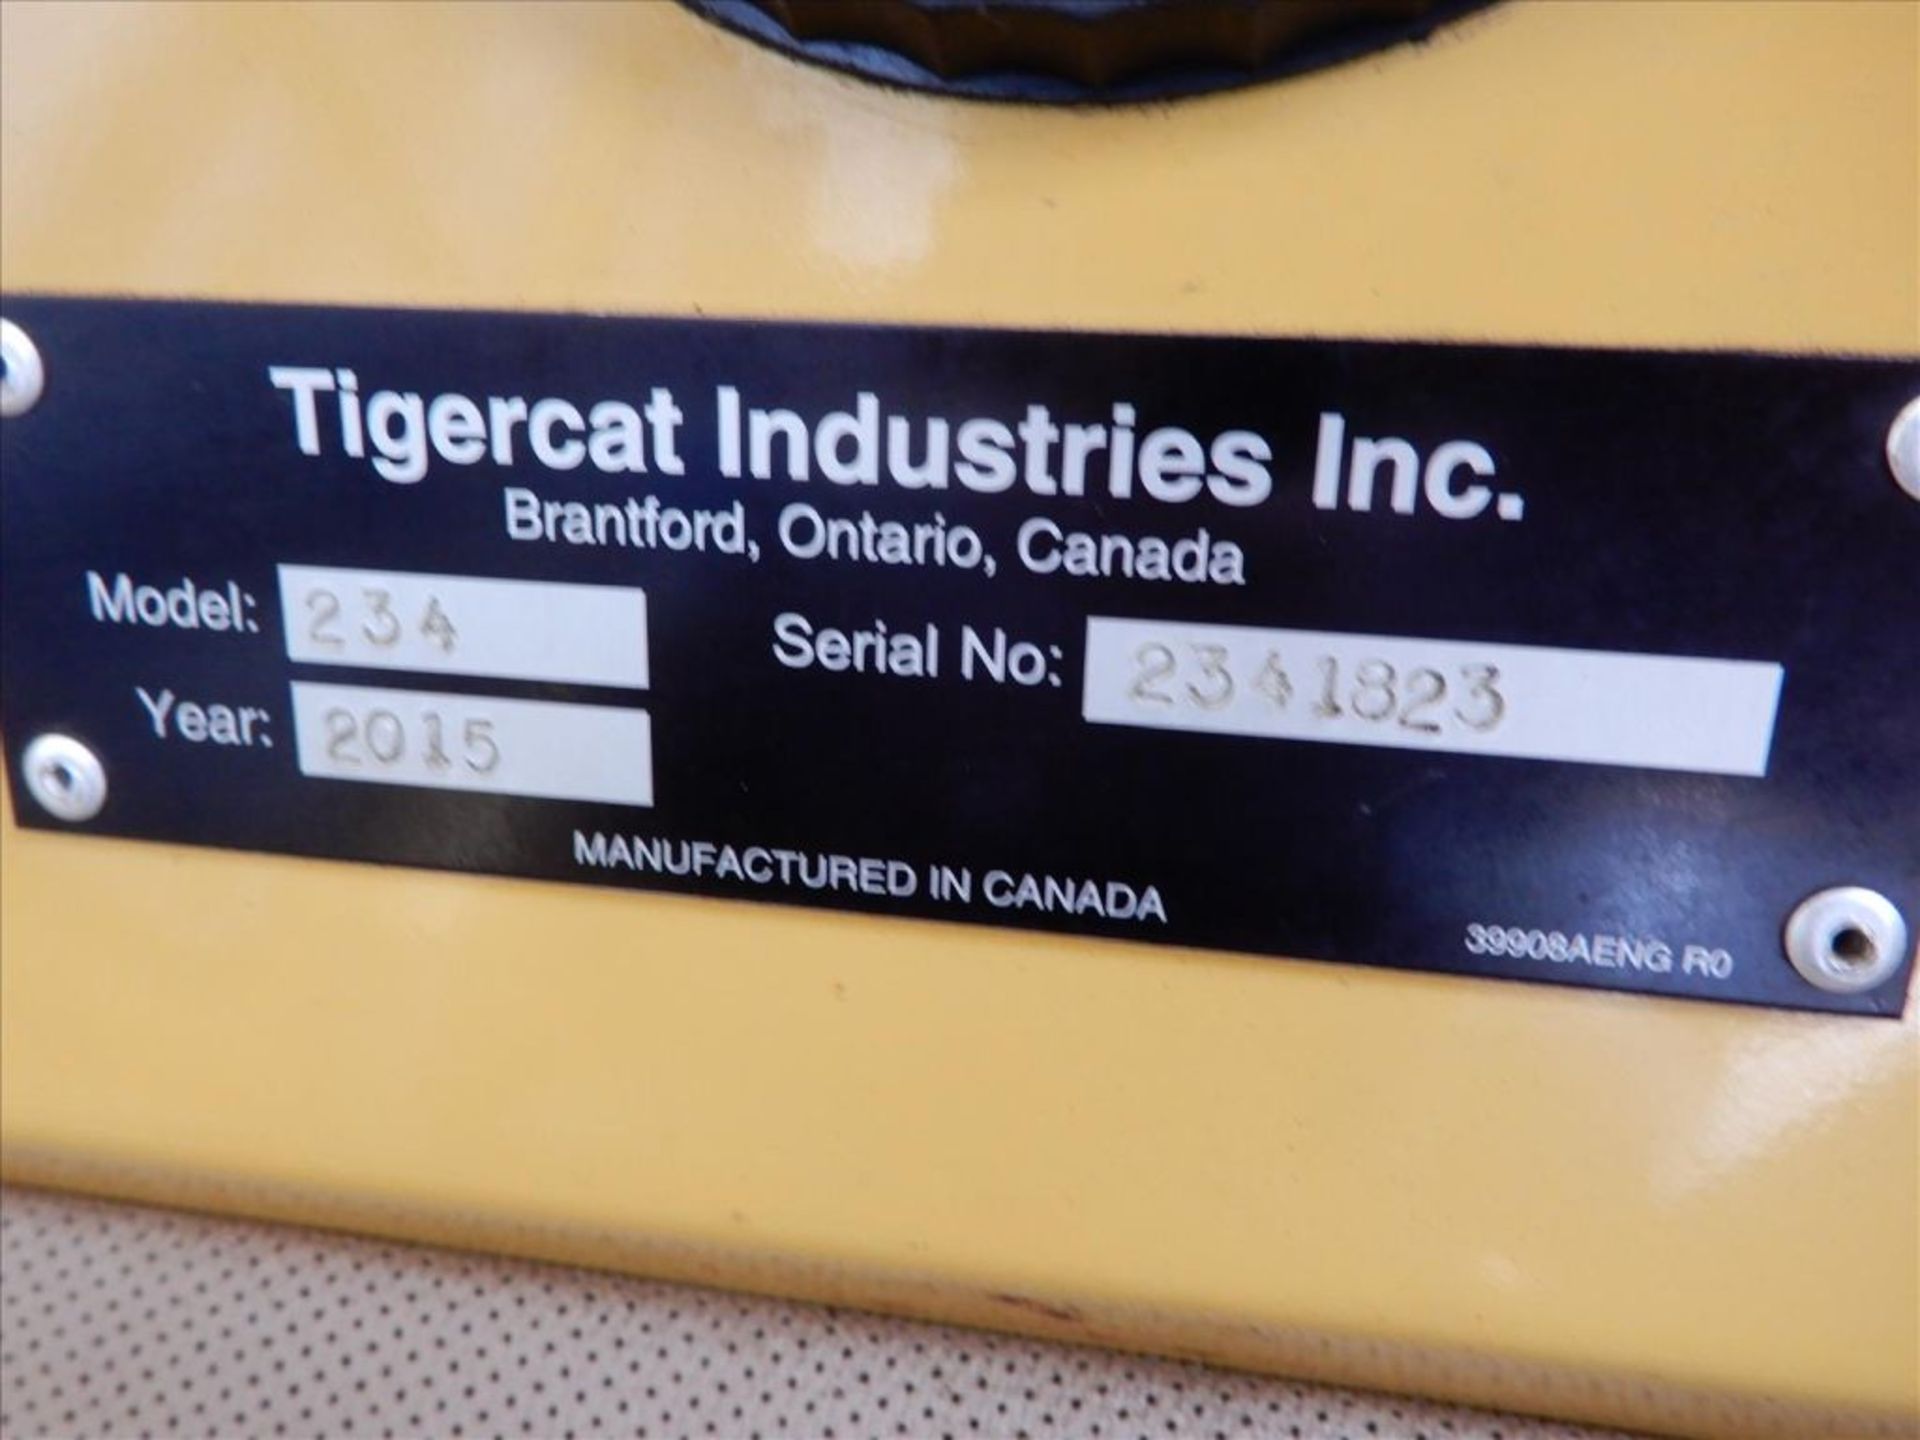 2015 Tigercat 234 Log Loader - Image 30 of 76